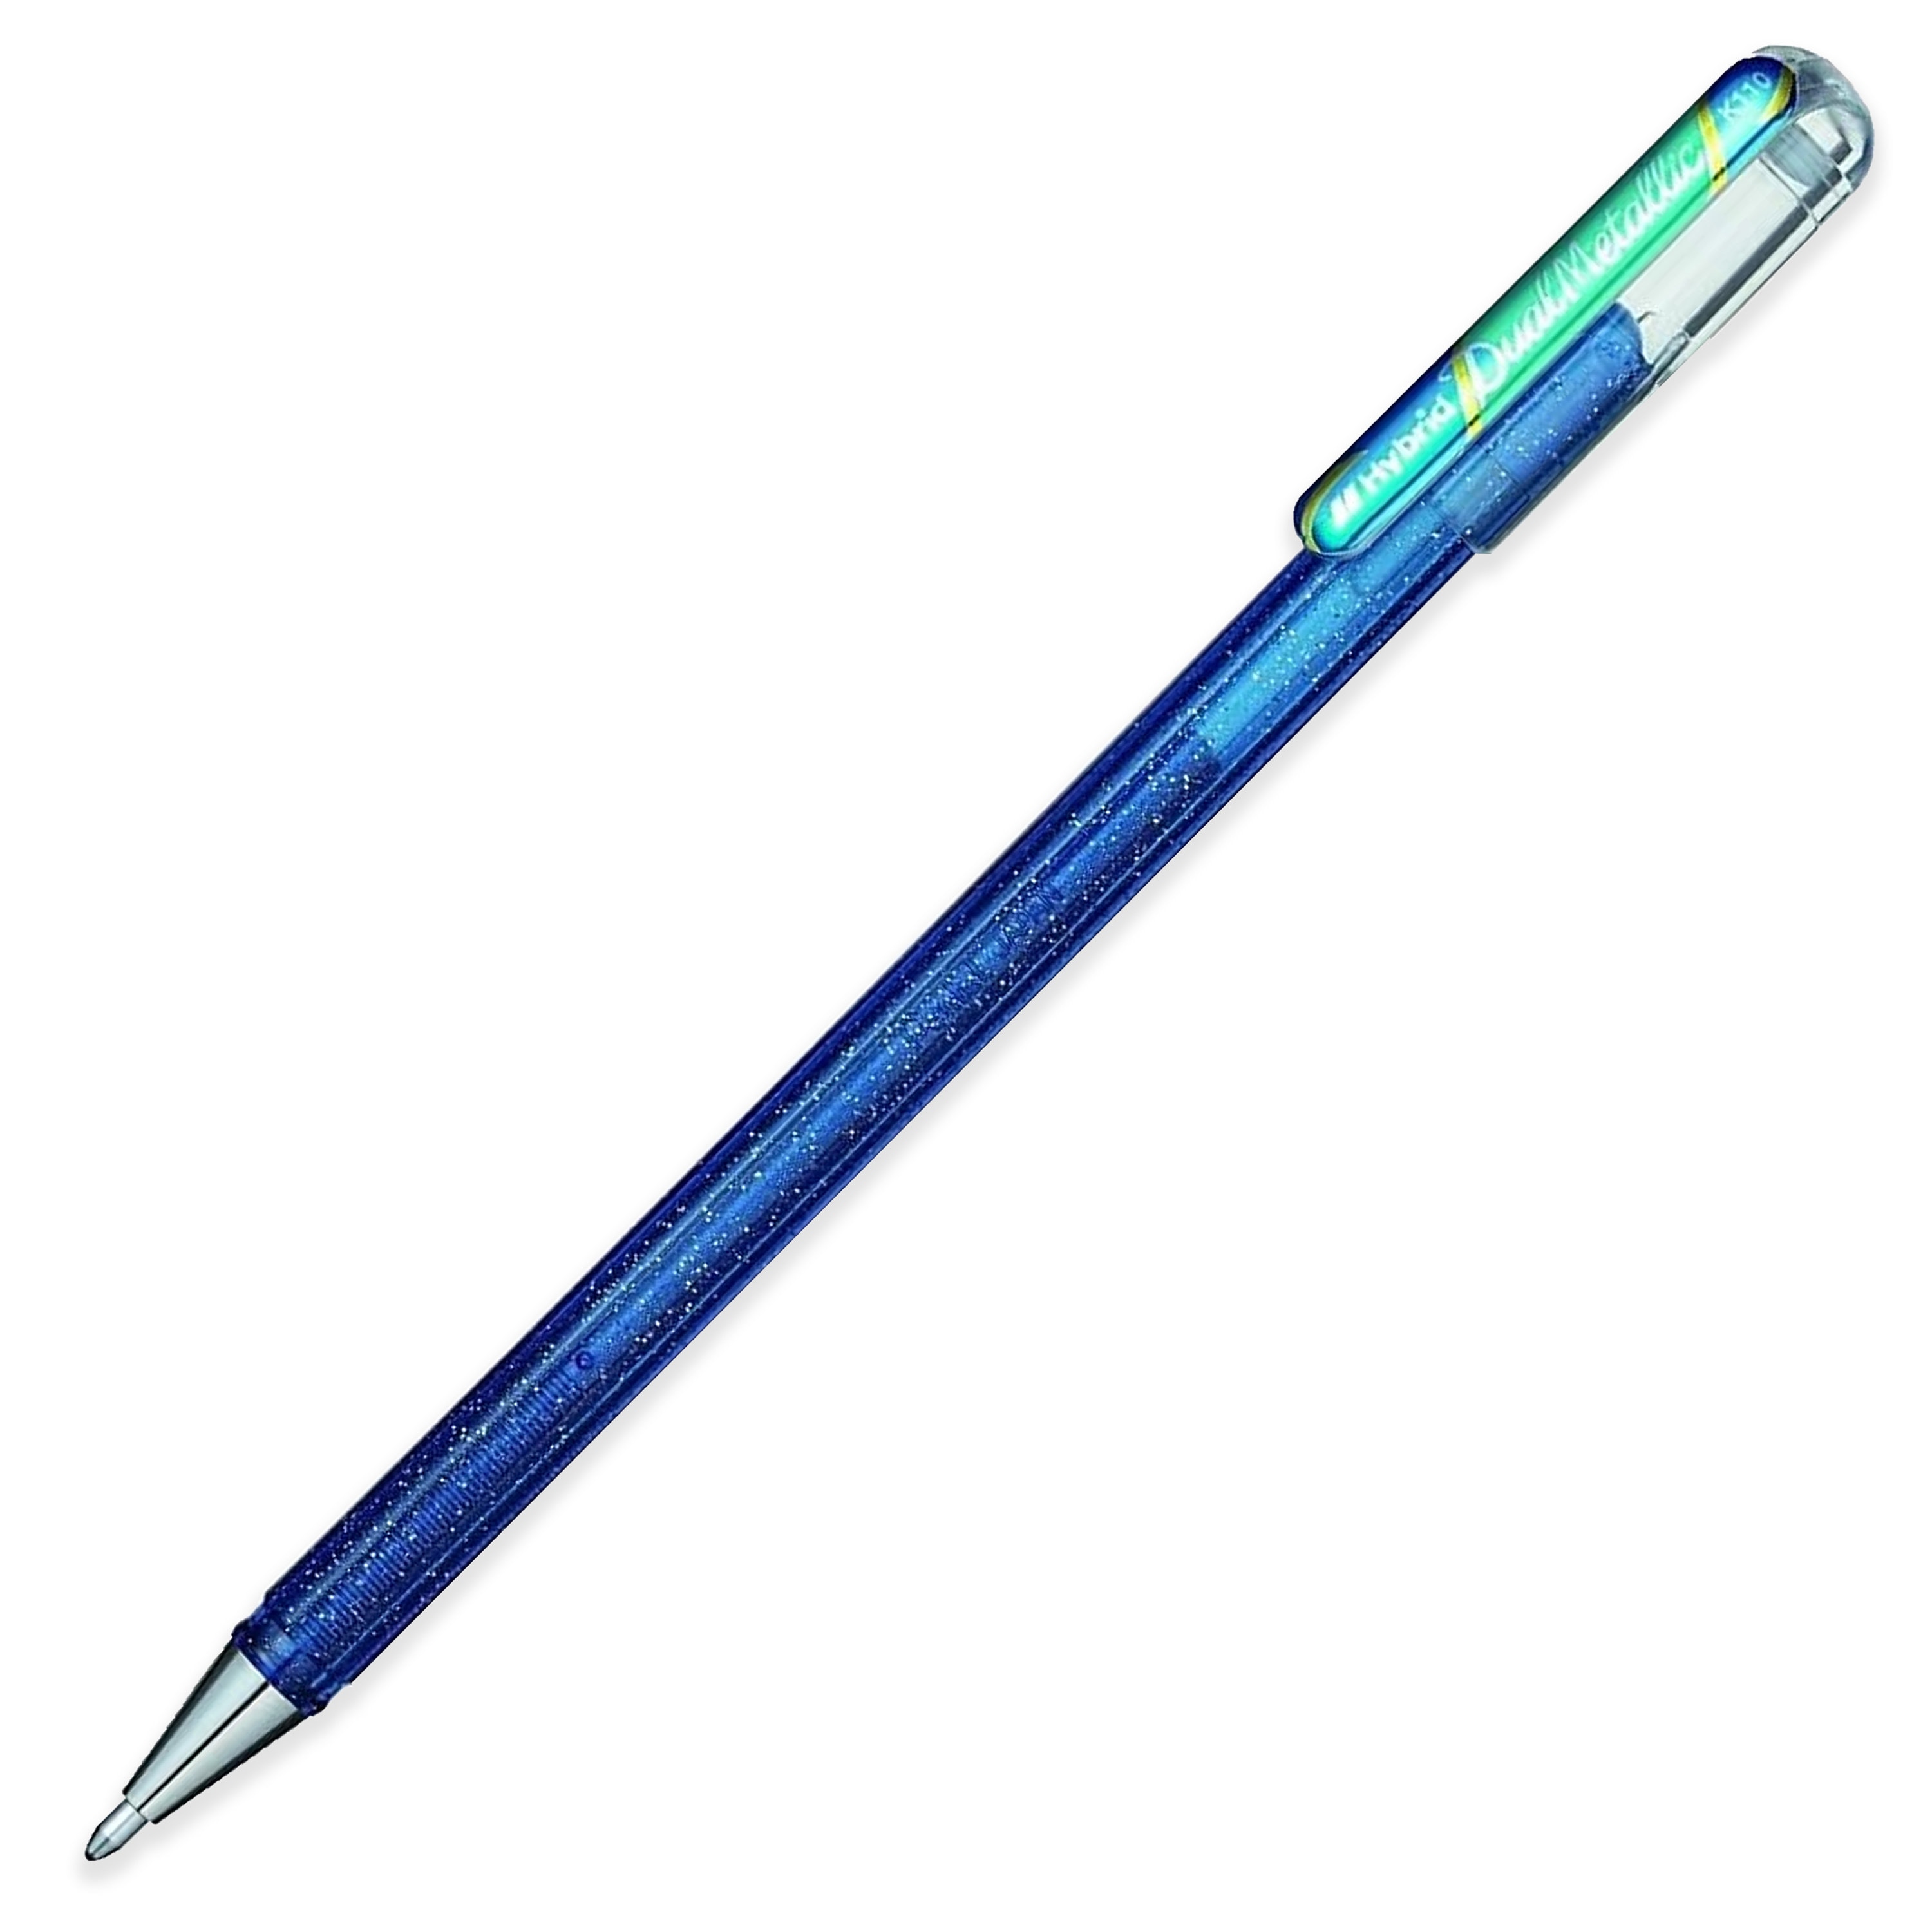 3 X Pentel S570 Fineliner Pen Ultra Fine 0.6mm Nib 100% Recyclable